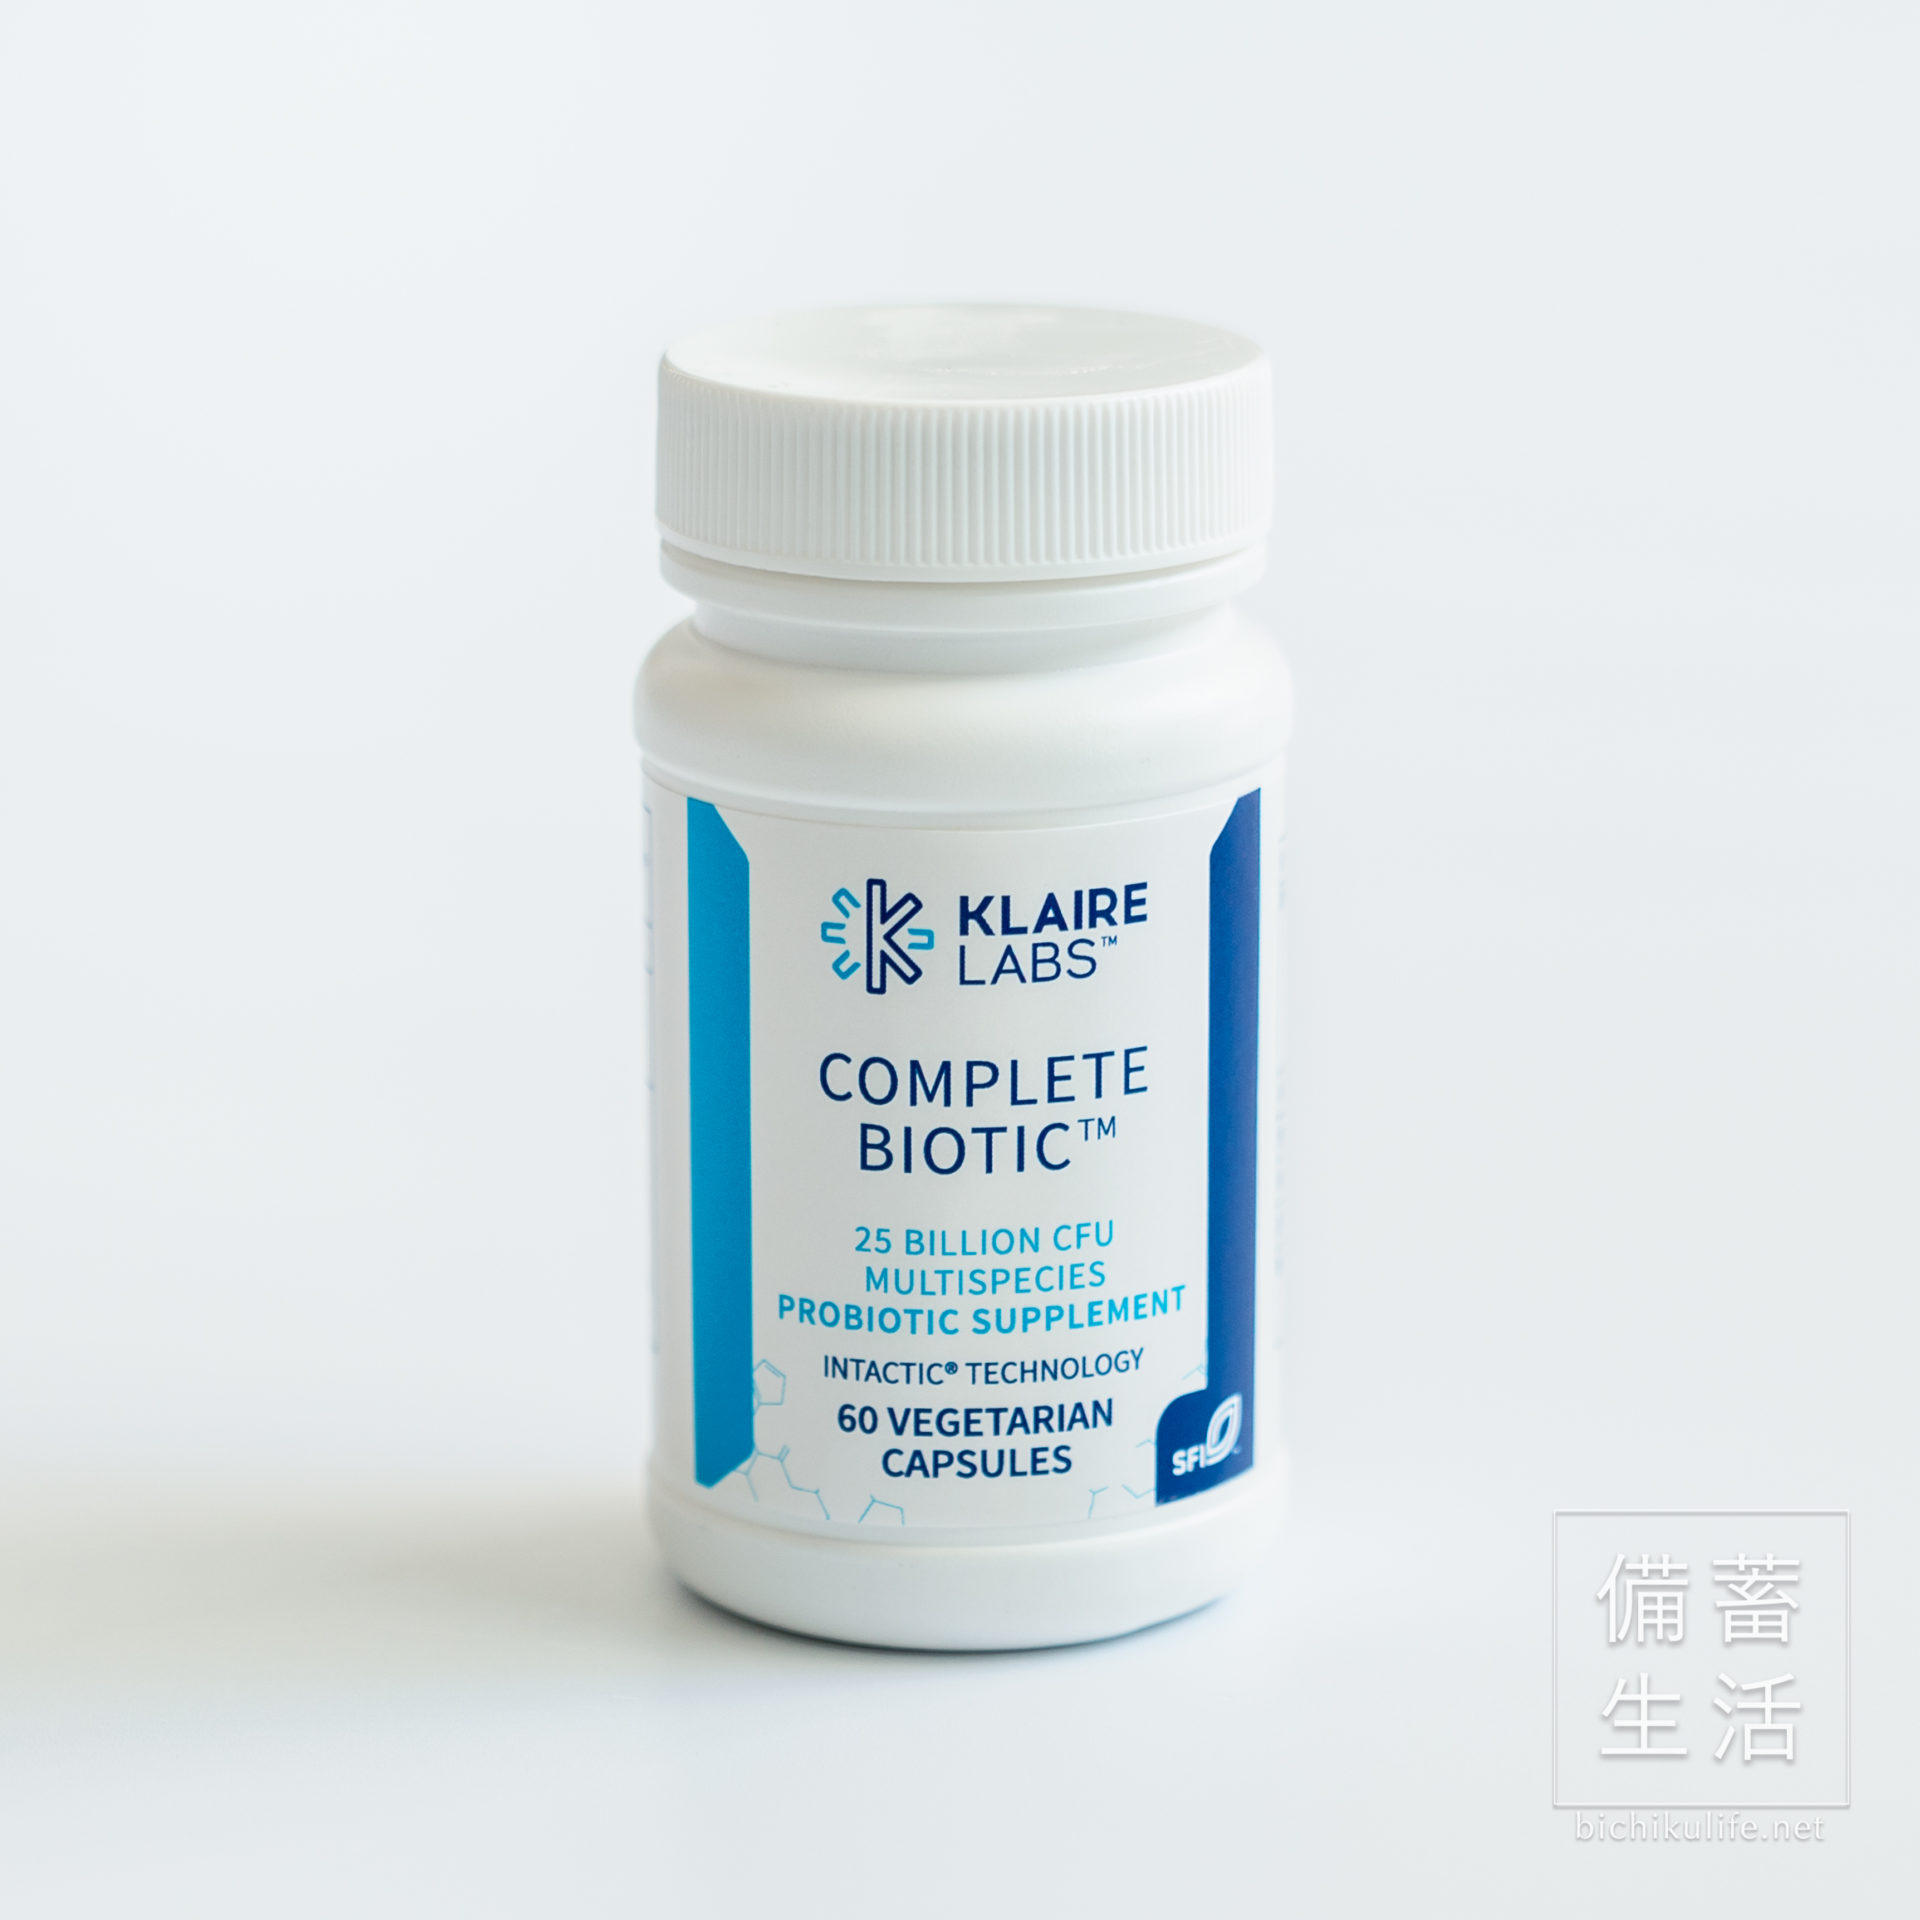 クレアラボ コンプリート バイオティック乳酸菌 Klaire Labs Complete Biotic